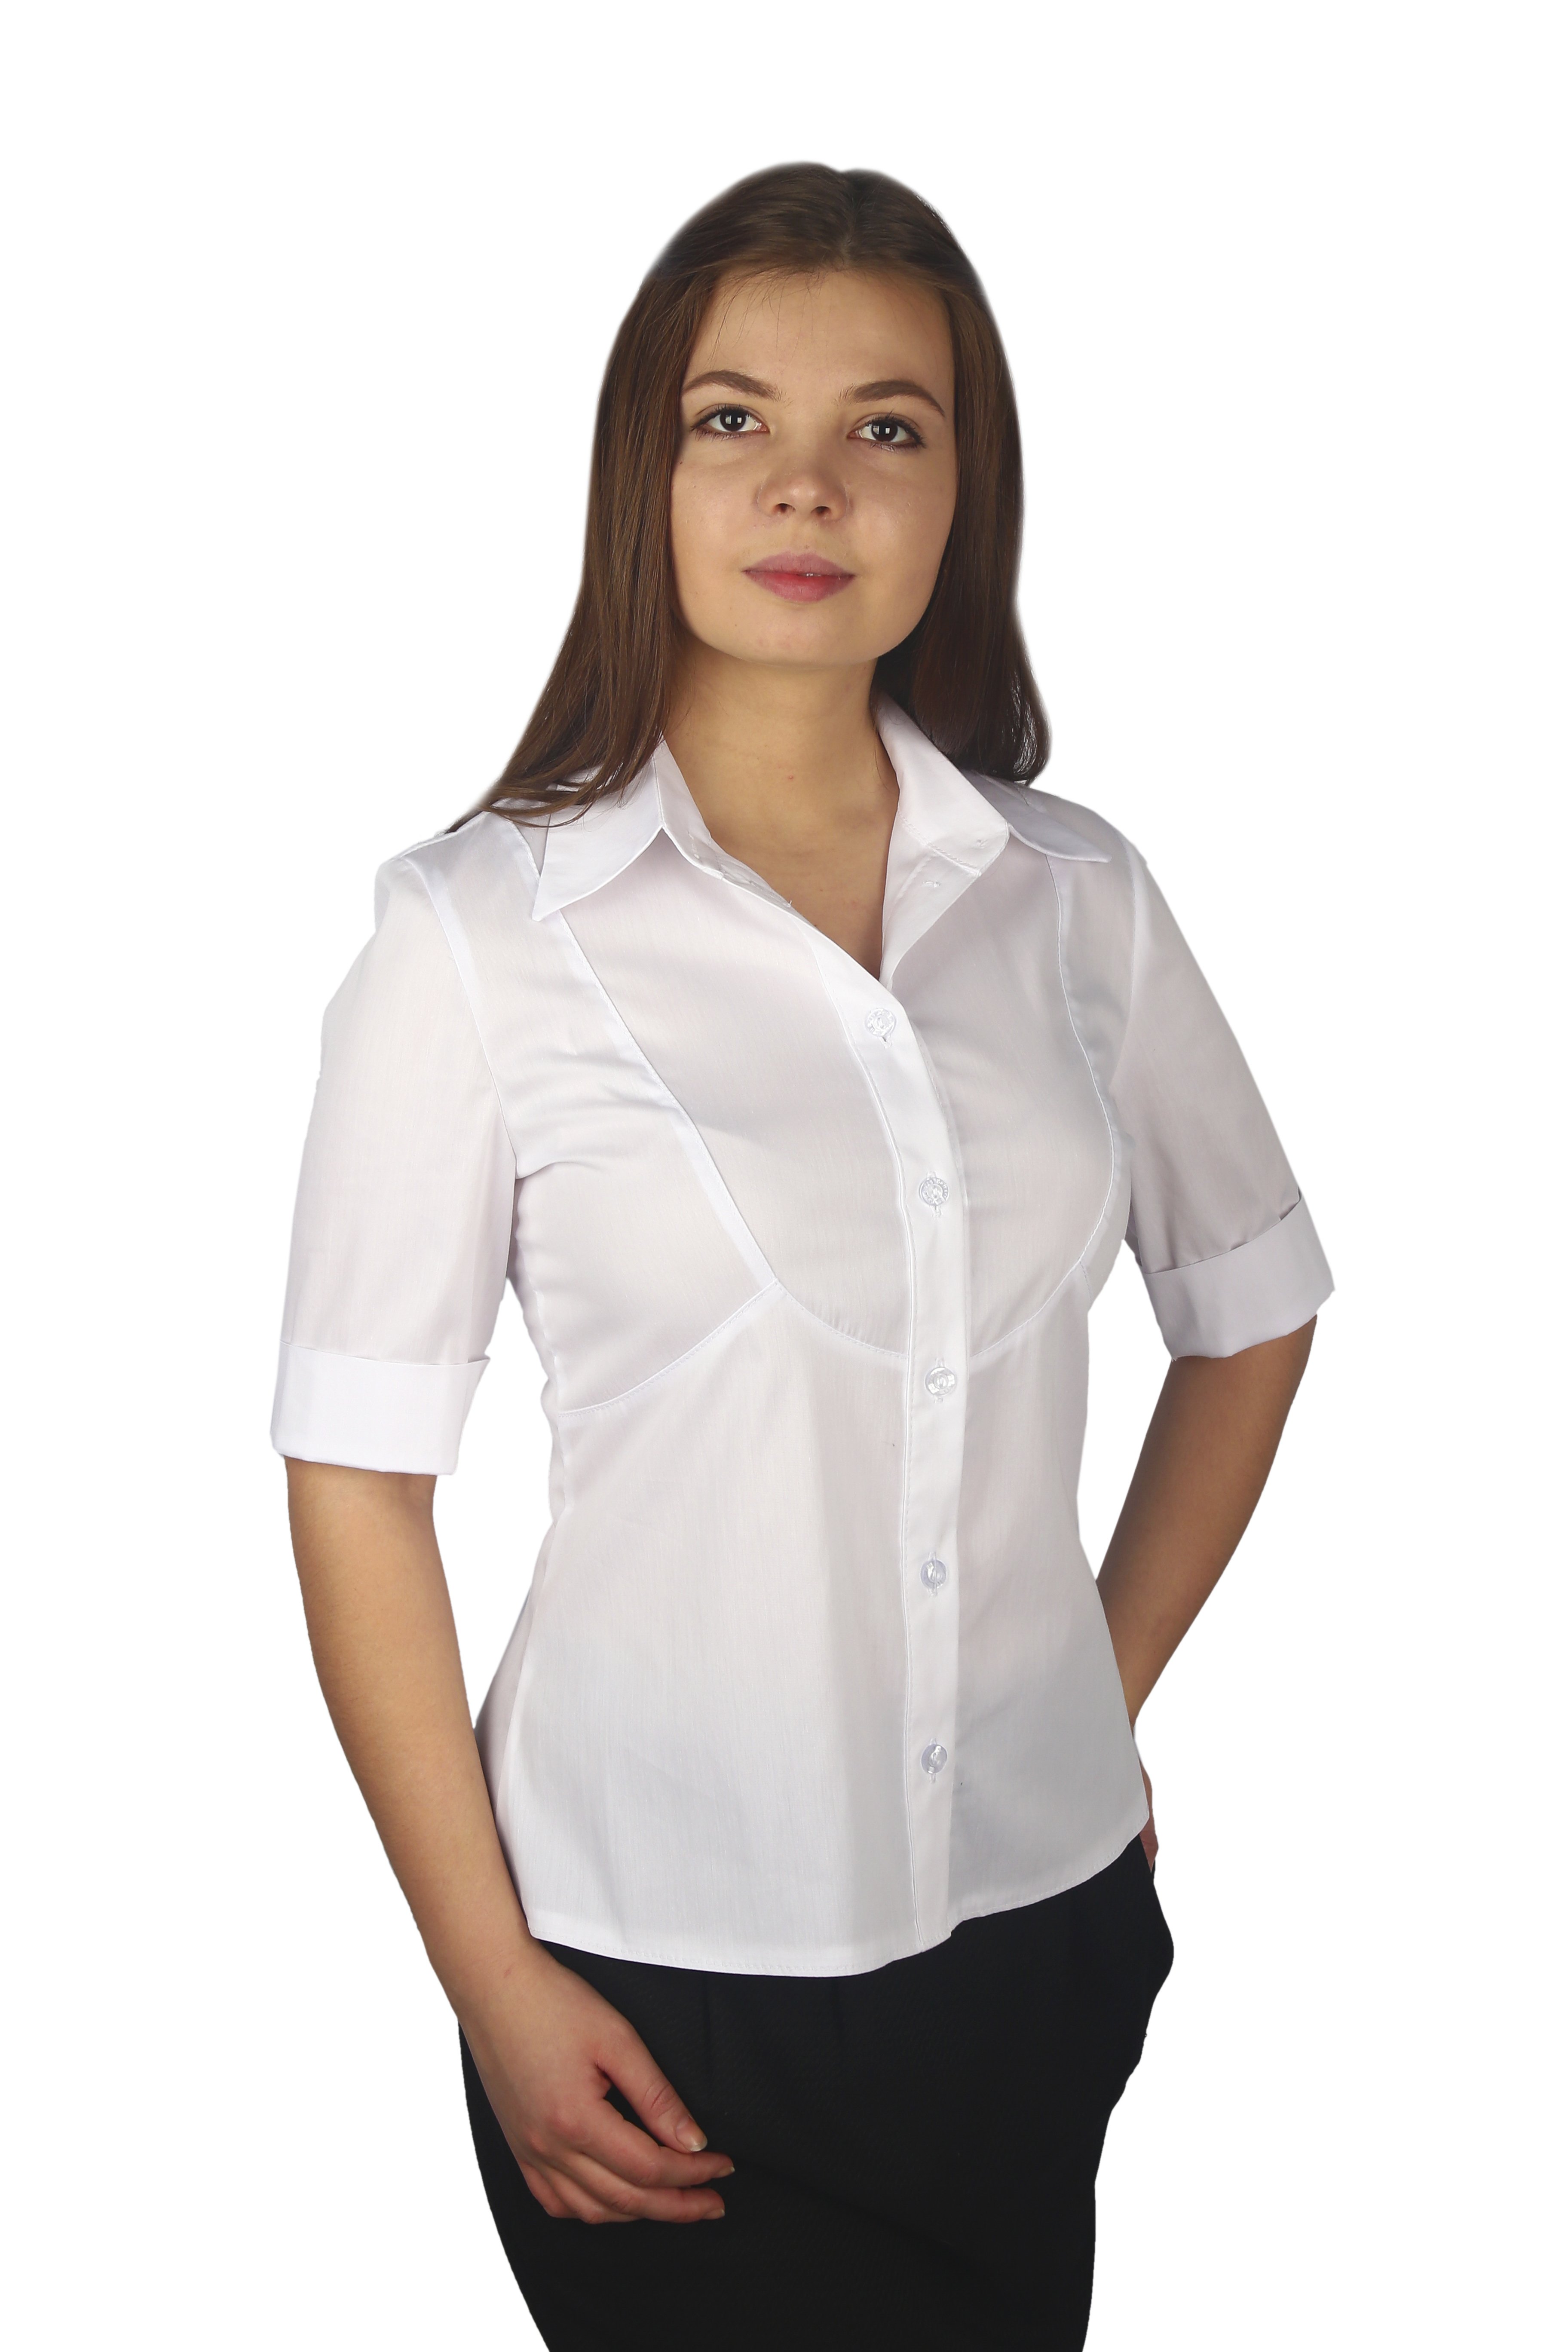 Интернет магазин белых блузок. Блузка женская. Белая блузка. Белая блузка женская. Белая рубашка женская.